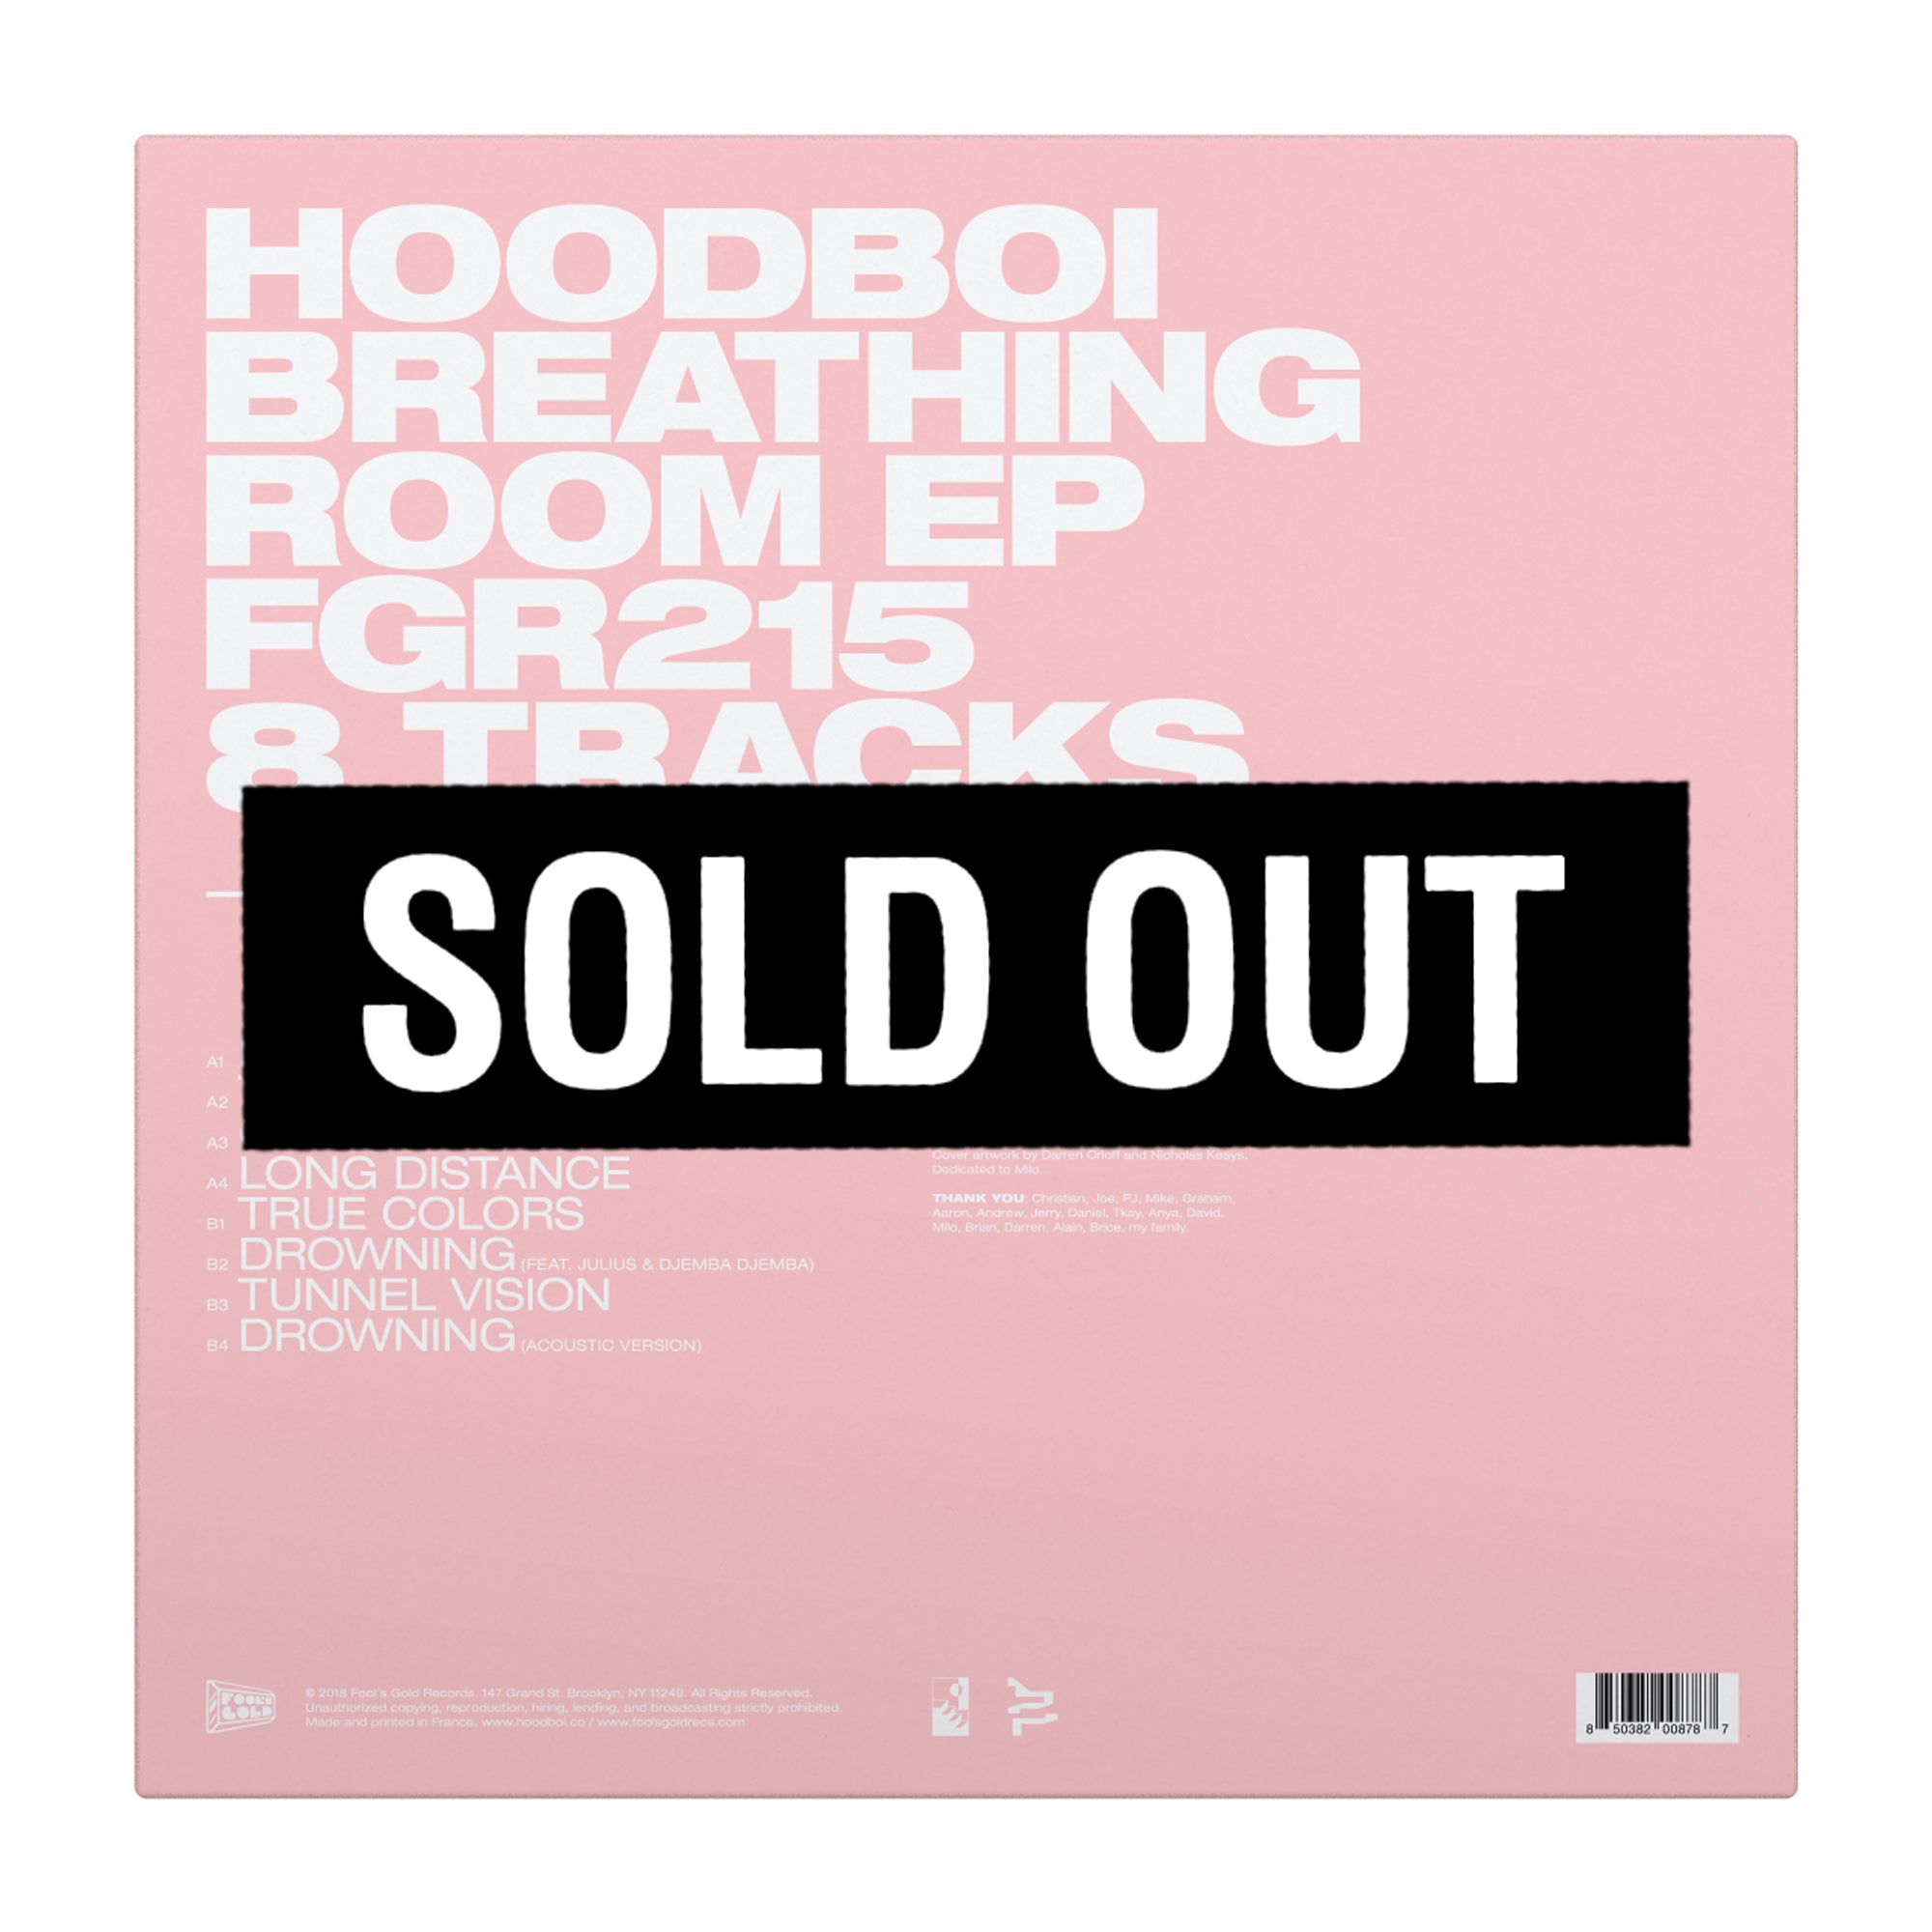 Hoodboi “Breathing Room” Color Vinyl 12”